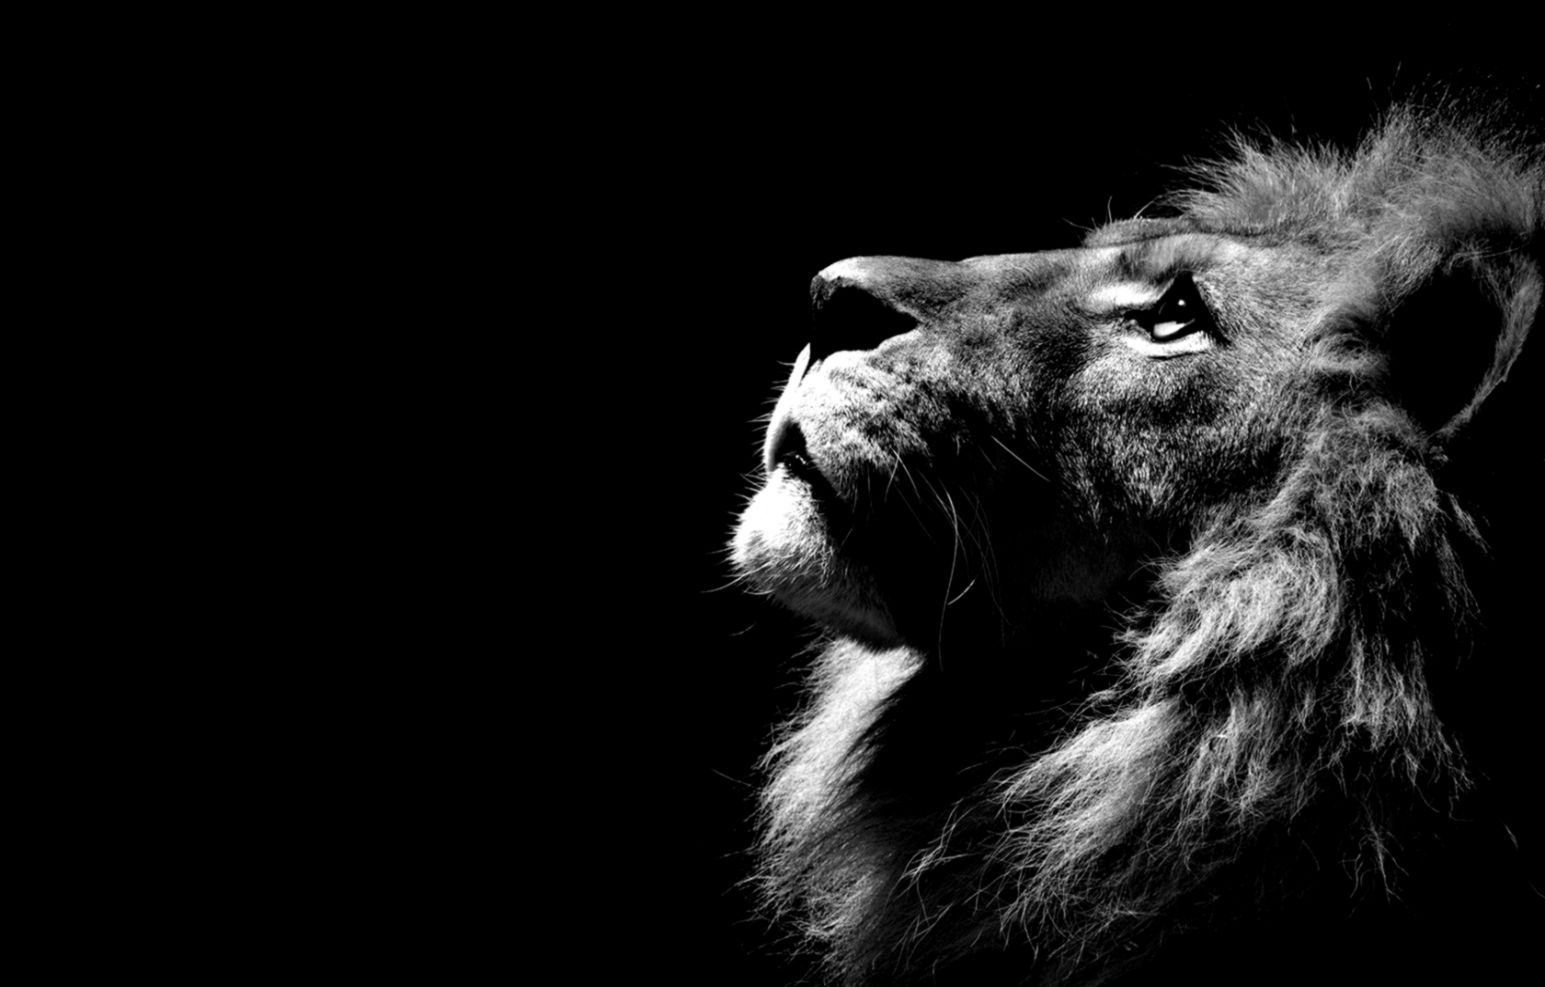 Hình nền sư tử buồn - Những trong giai đoạn buồn bã hay căng thẳng, hãy xem những hình nền sư tử buồn, những hình ảnh không chỉ thể hiện sự đau thương mà còn đem lại cho bạn sự cảm thông và hiểu biết sâu sắc hơn về cuộc đời.